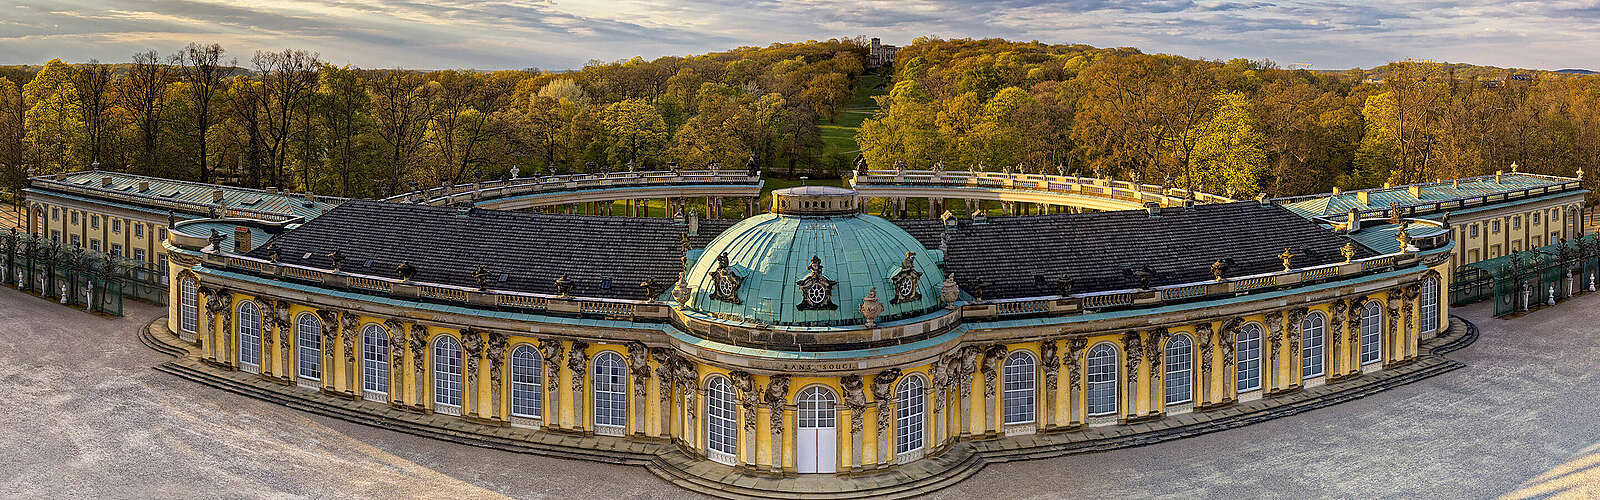 Schloss Sanssouci,
        
    

        Picture: PMSG/SPSG/André Stiebitz